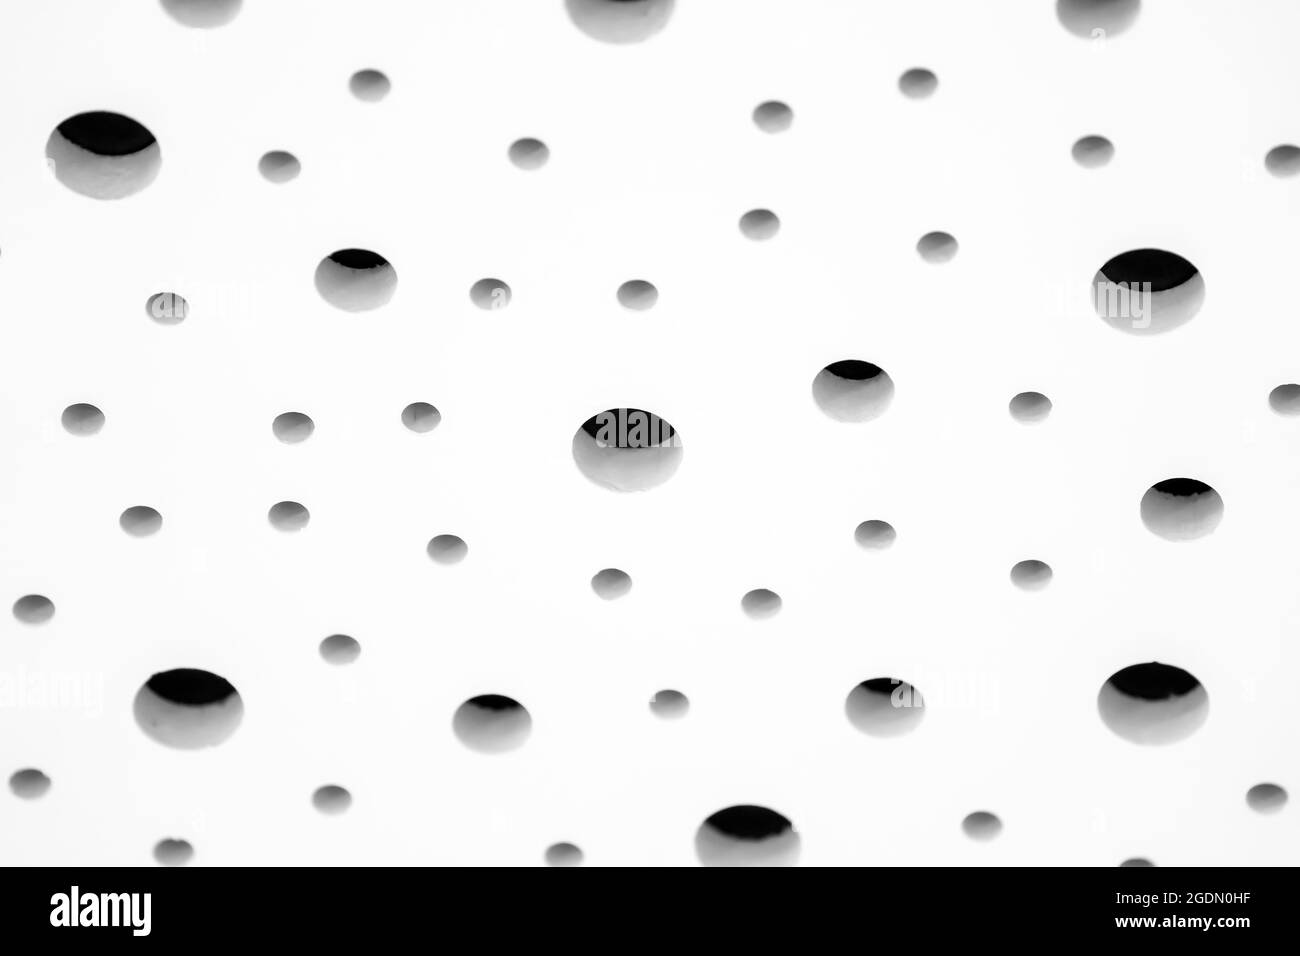 Eine Tapete aus schalldichten Akustischen weißen Schaum absorbierenden  Decke und Wand Polsterung Schicht Panel für Studio-Aufnahmesaal  Stockfotografie - Alamy